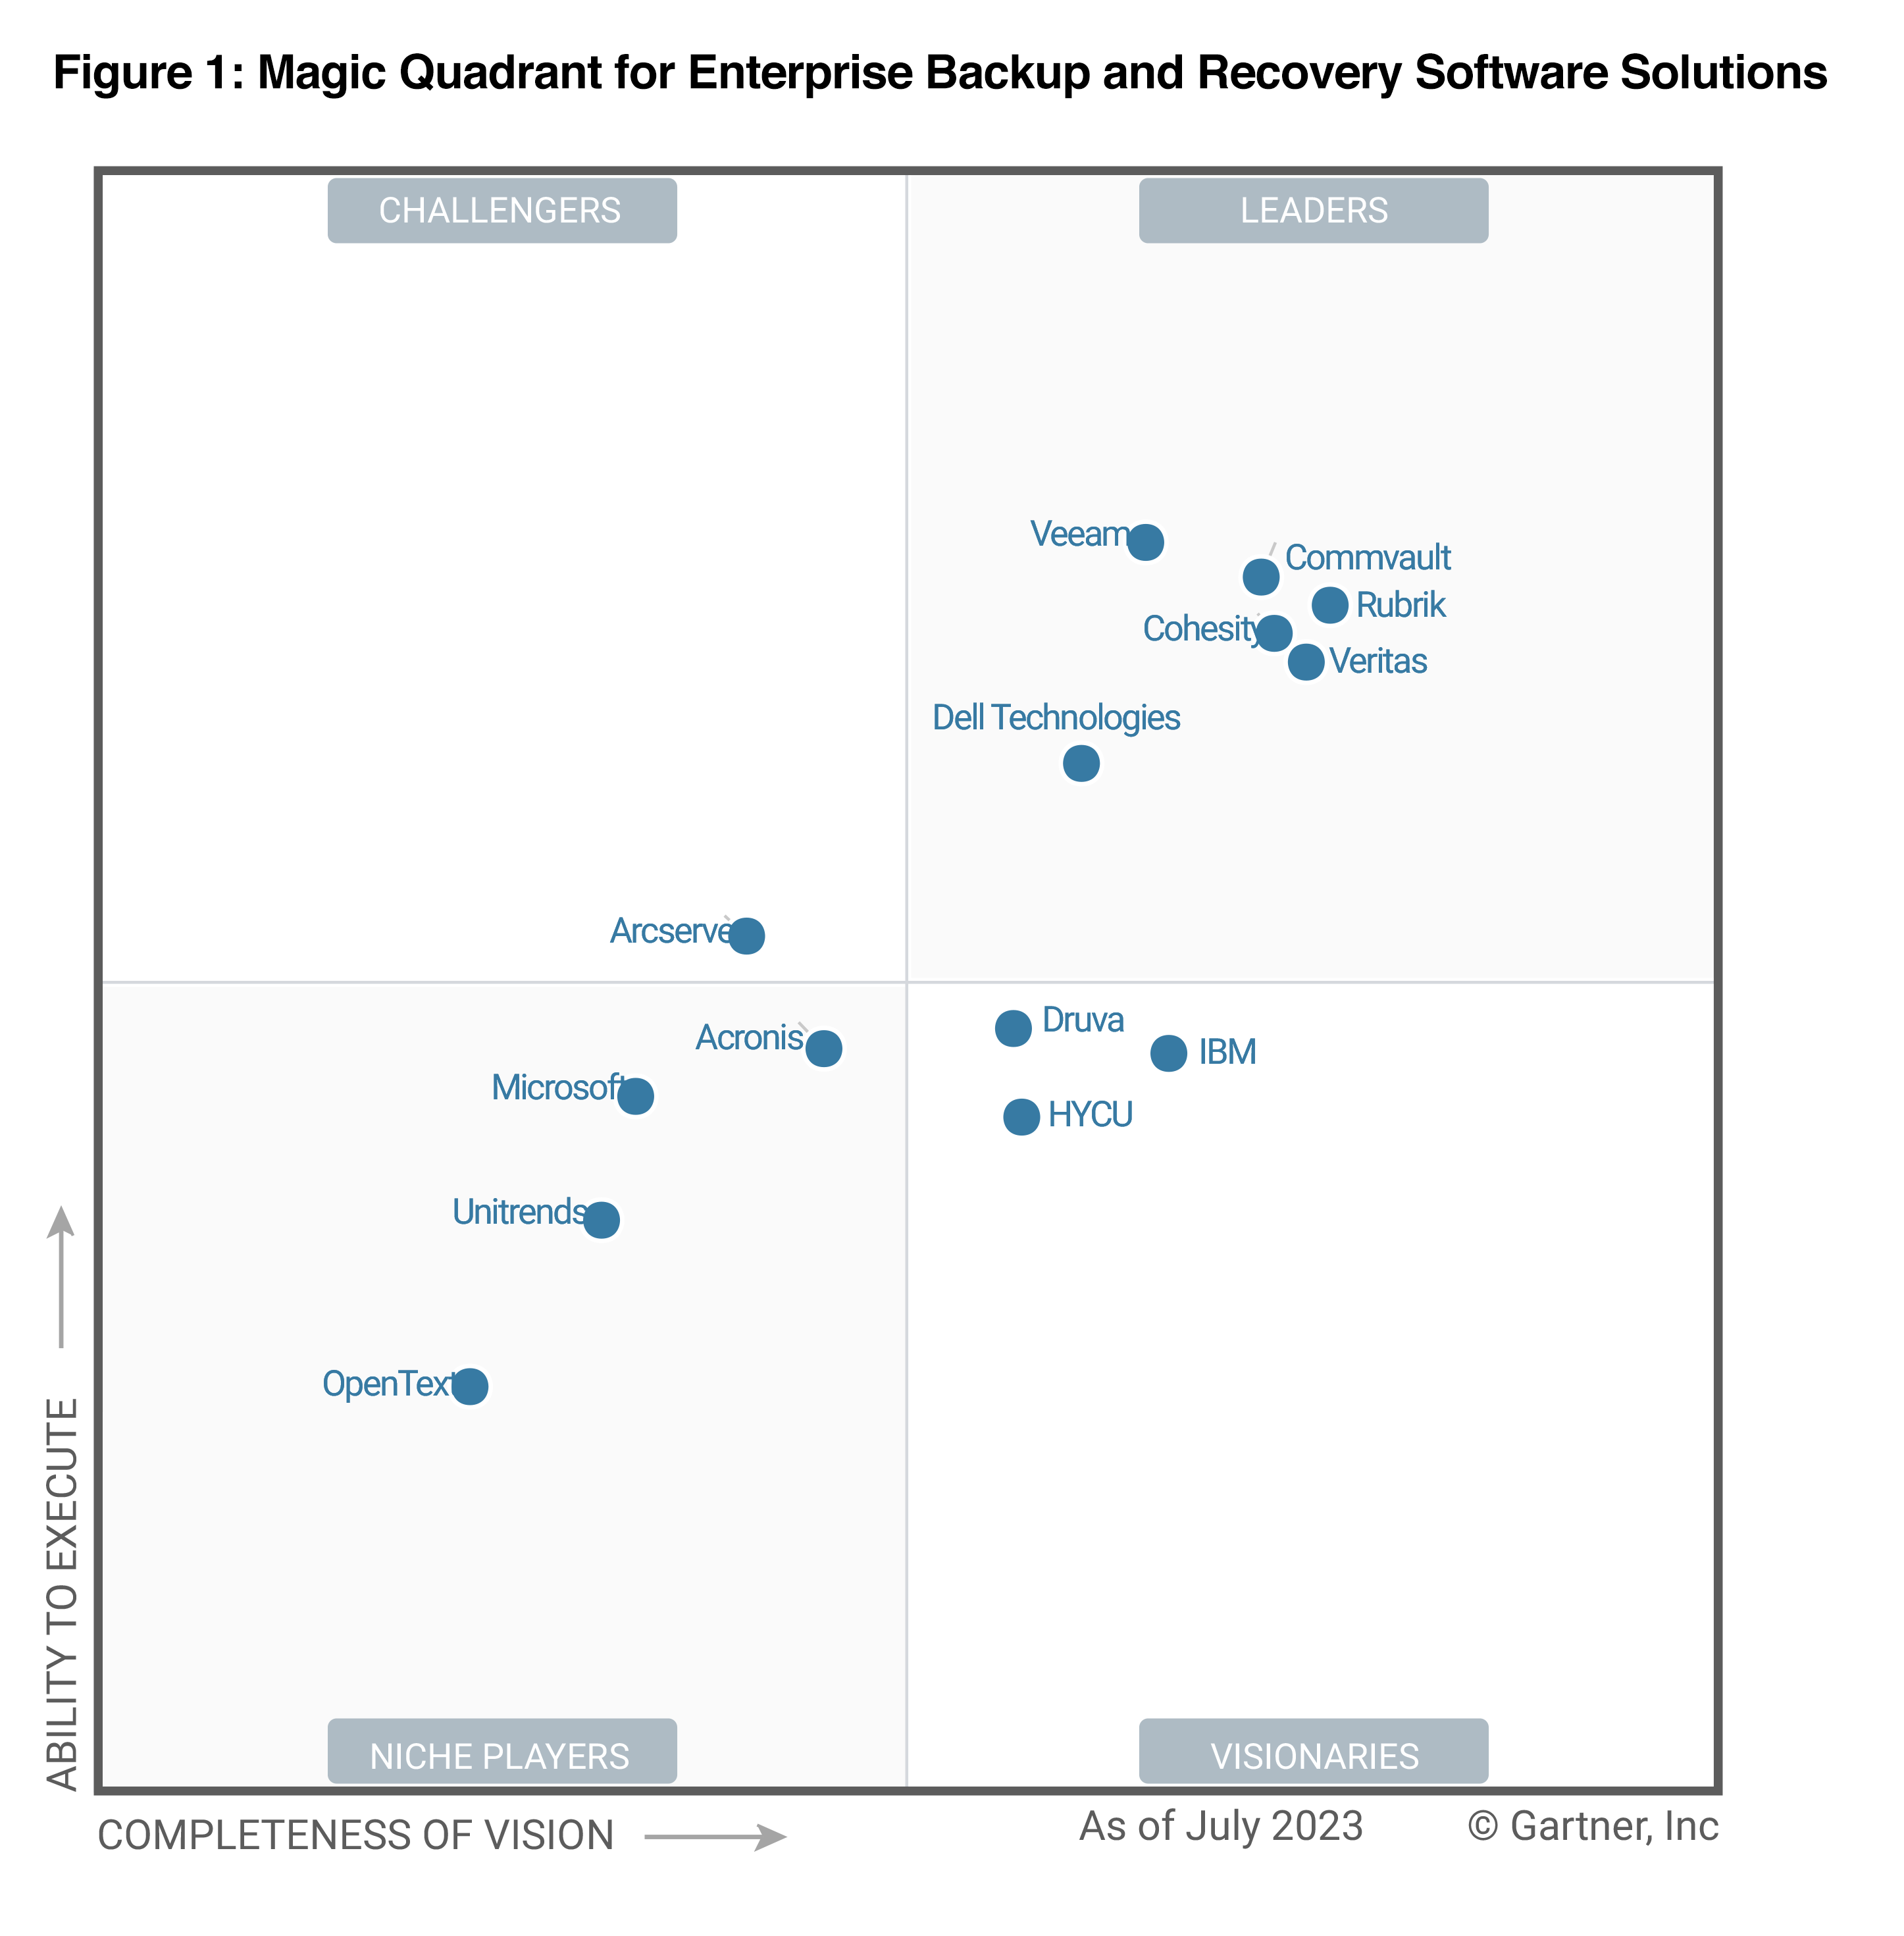 Veeam, lider în Gartner® Magic Quadrant 2023 în categoria soluții software de backup și recuperare a datelor pentru companii, a șaptea oară consecutiv